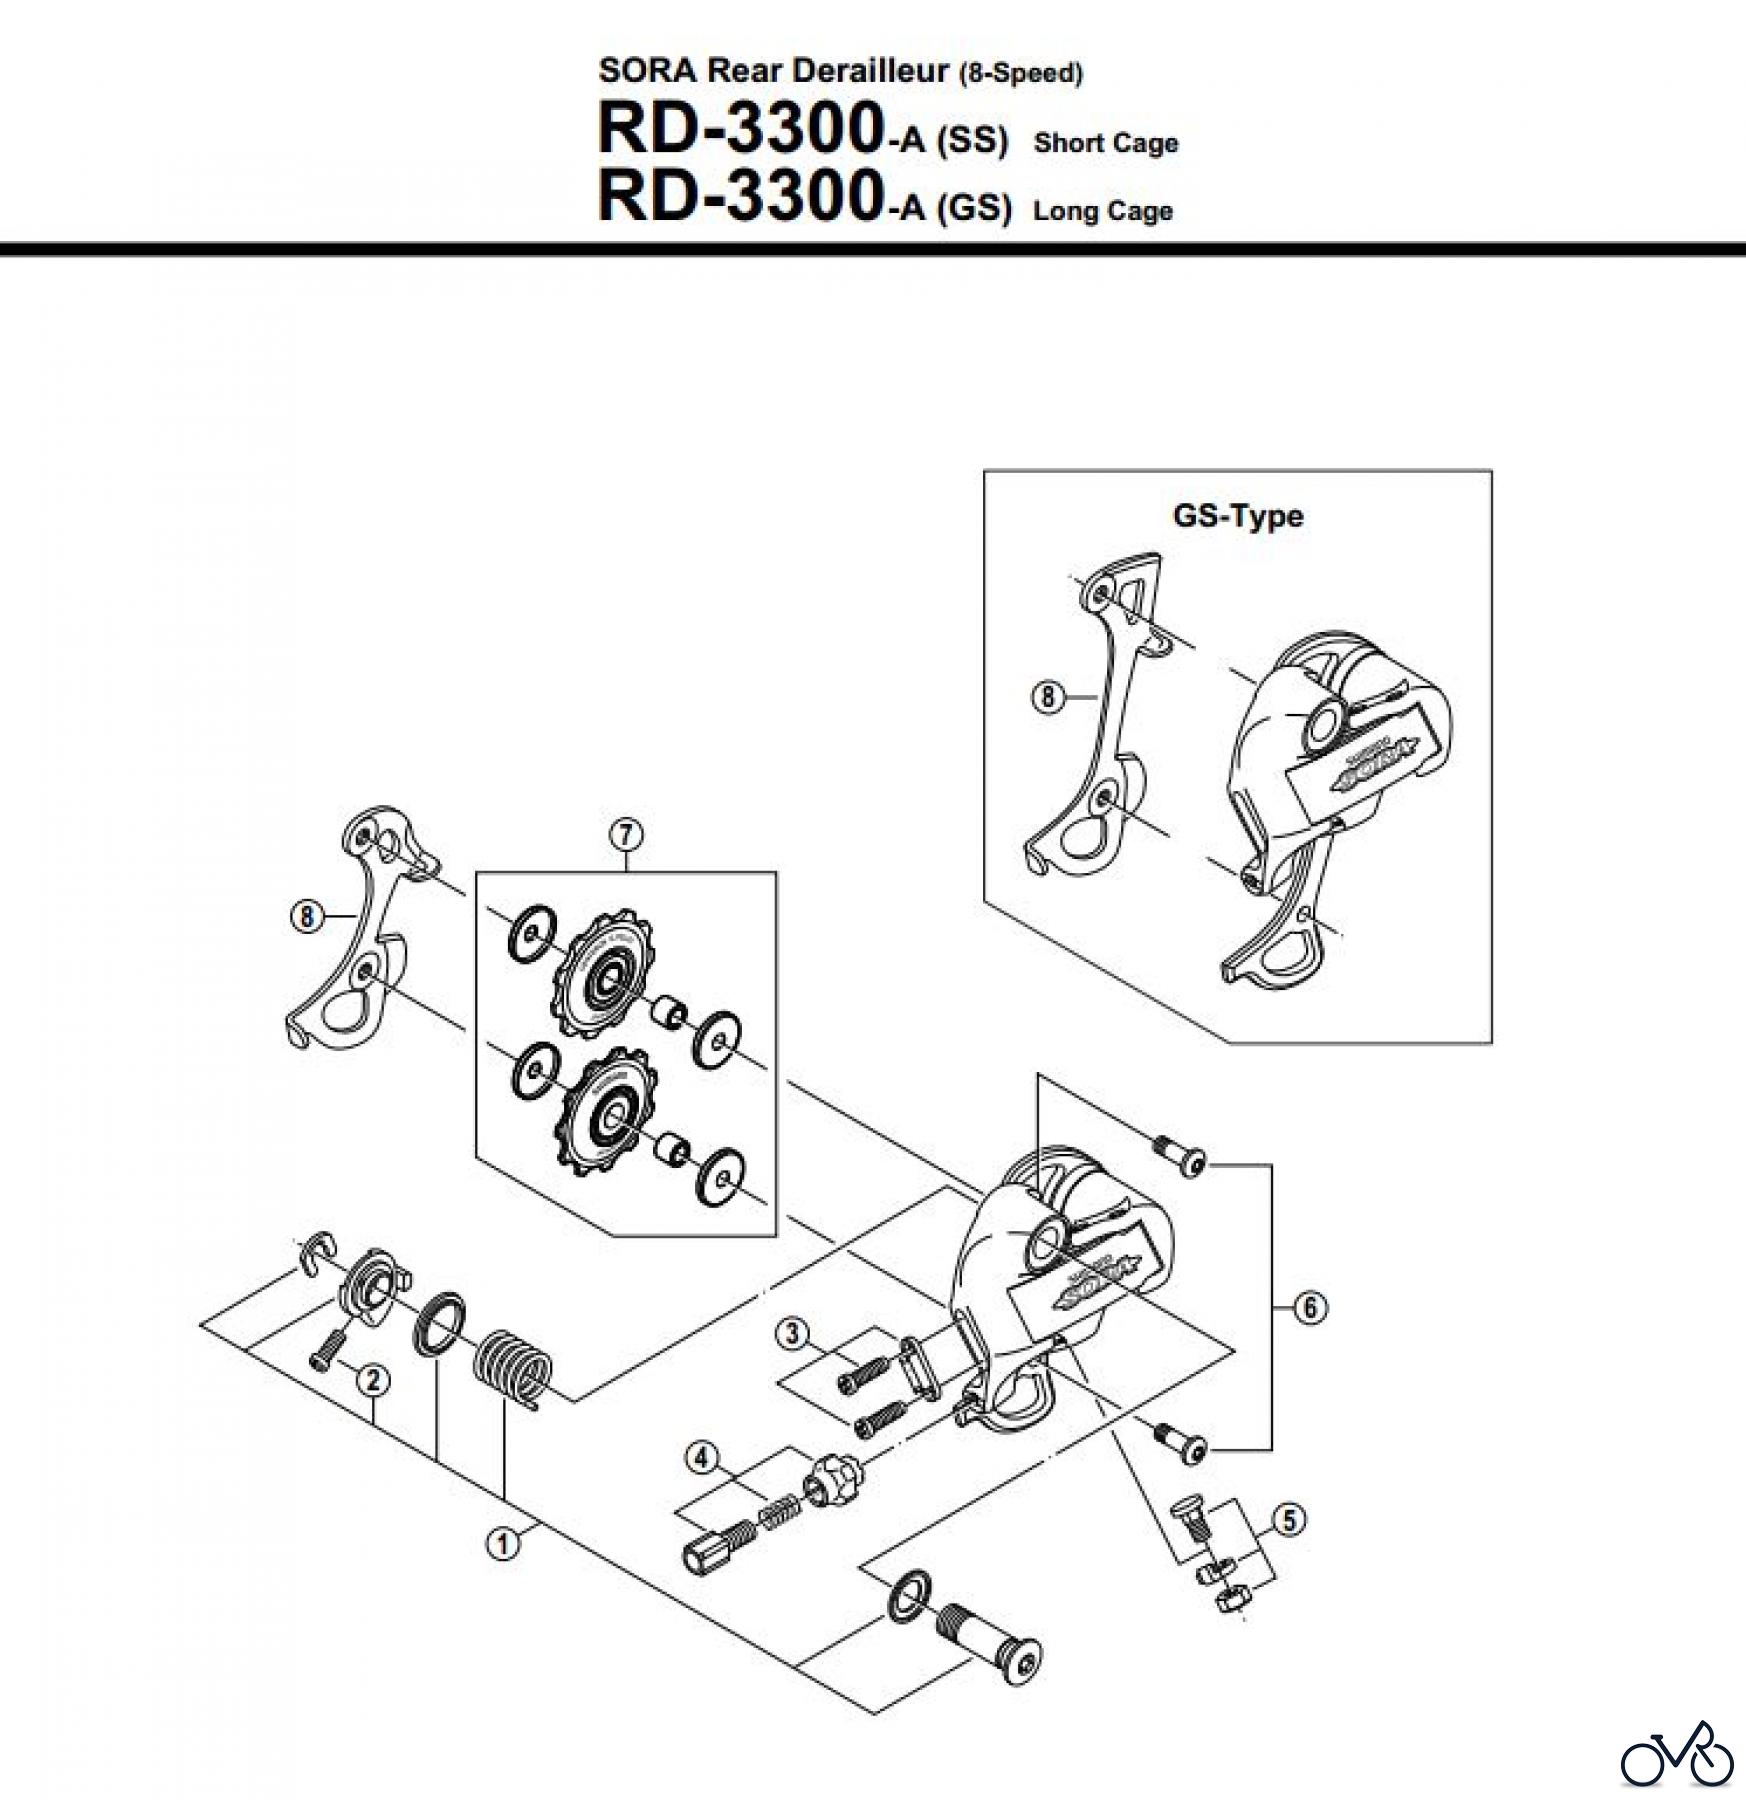  Shimano RD Rear Derailleur - Schaltwerk RD-3300-A-2539